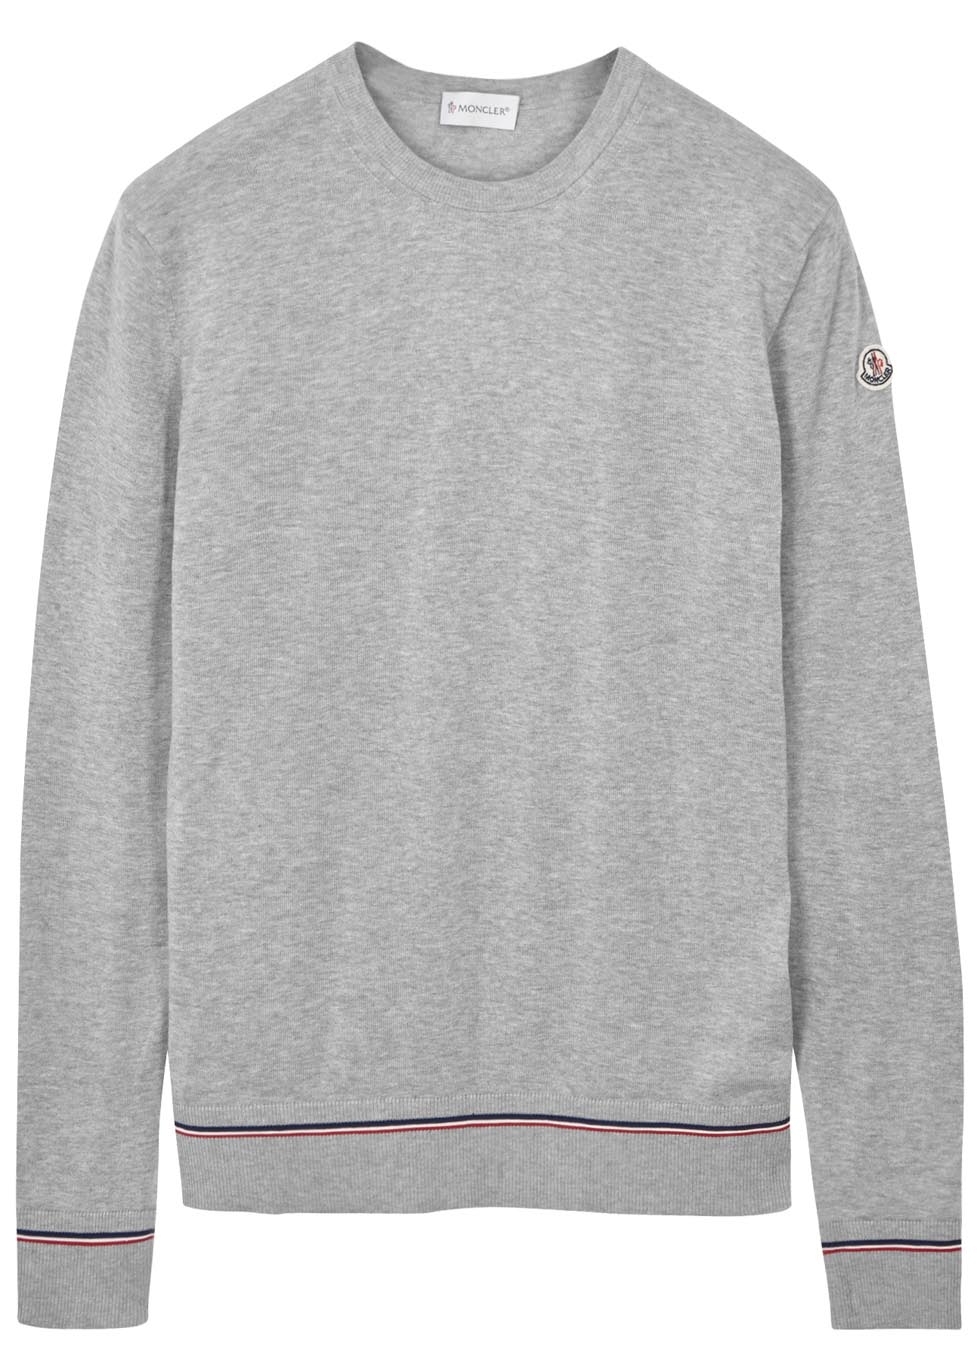 Grey fine-knit cotton jumper